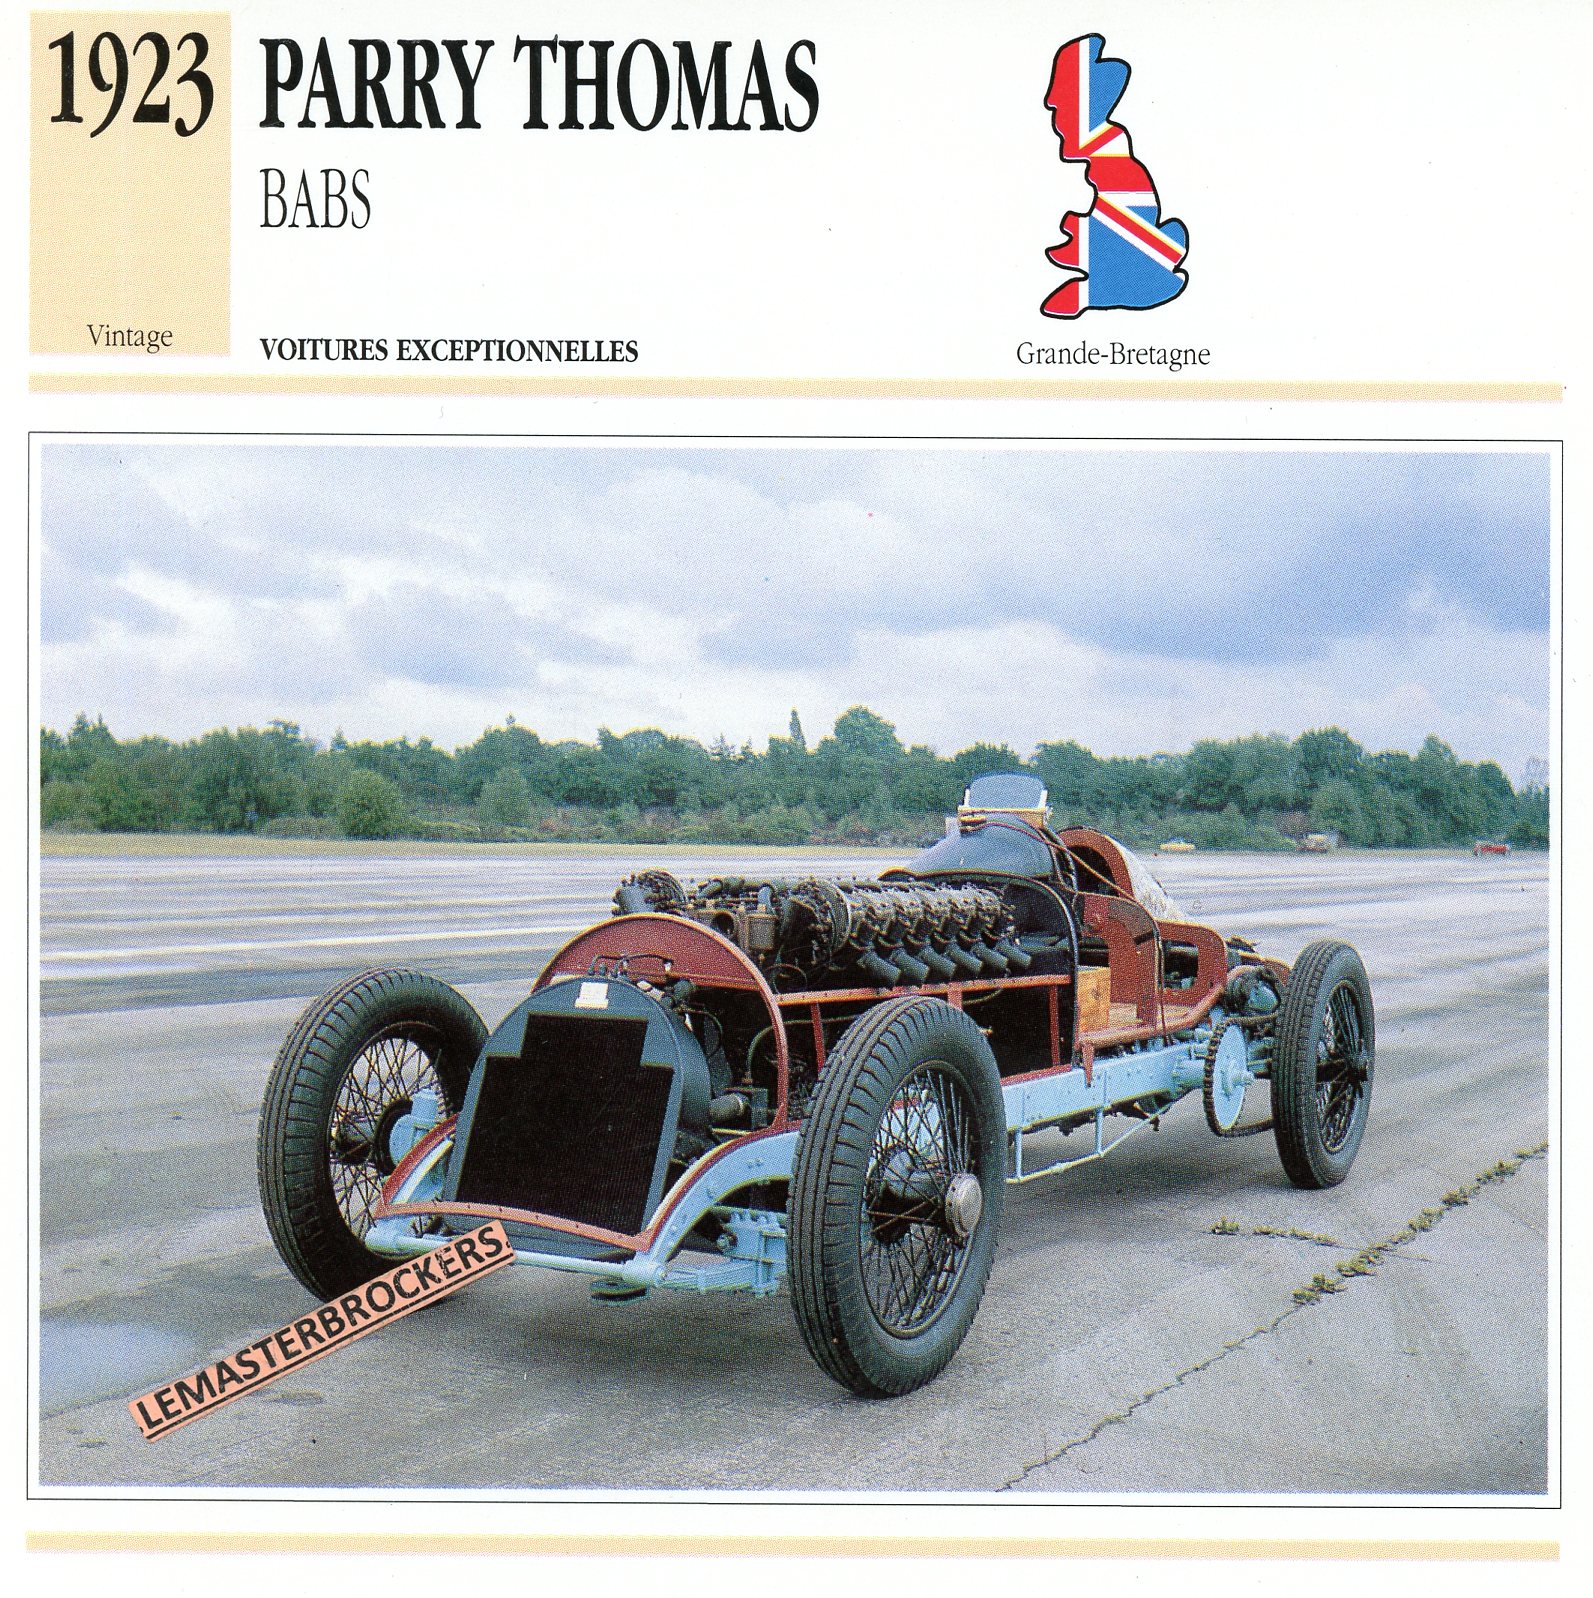 FICHE-PARRY-THOMAS-BABS-1923-FICHE AUTO ATLAS-LEMASTERBROCKERS